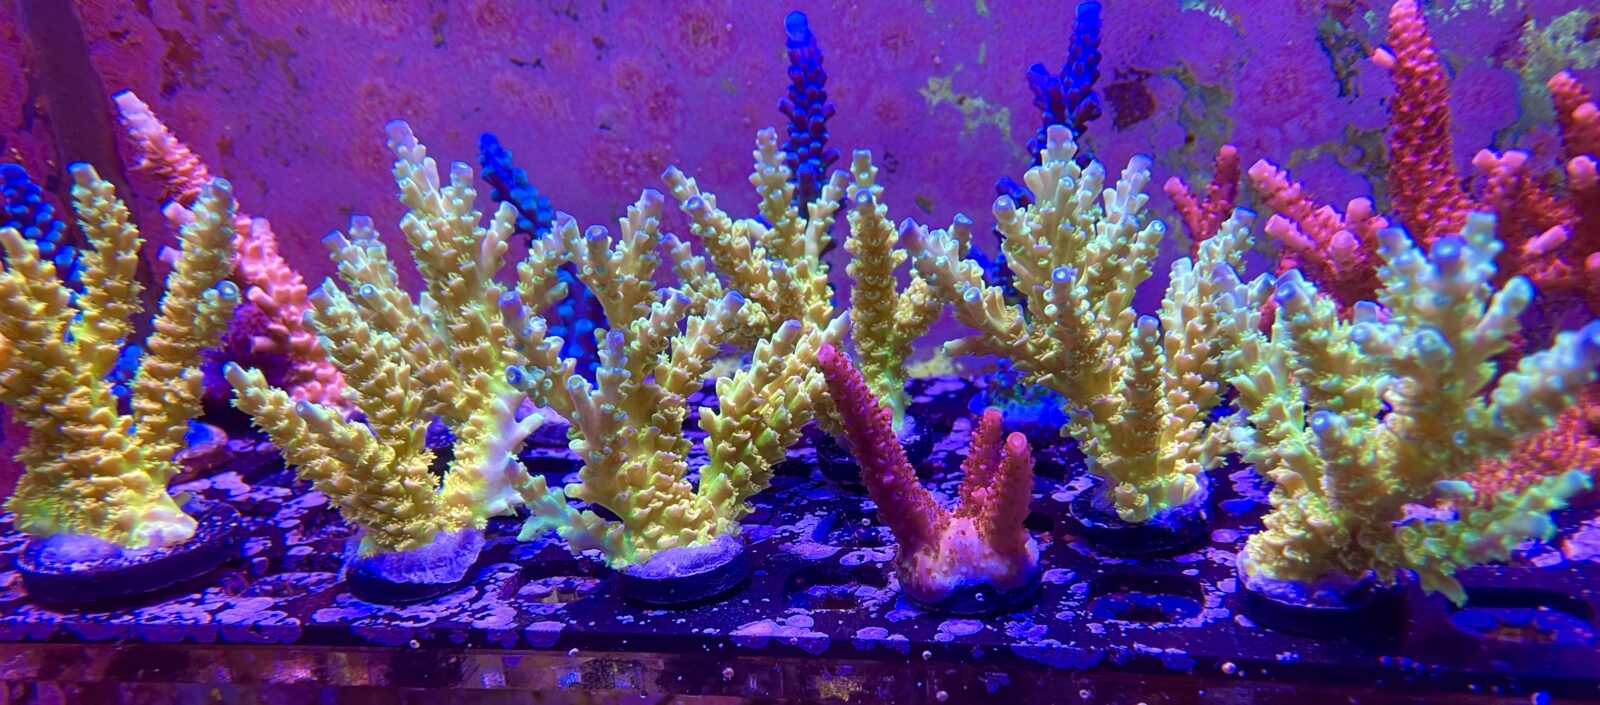 coral frag or3 led bar coral pop fluorescence